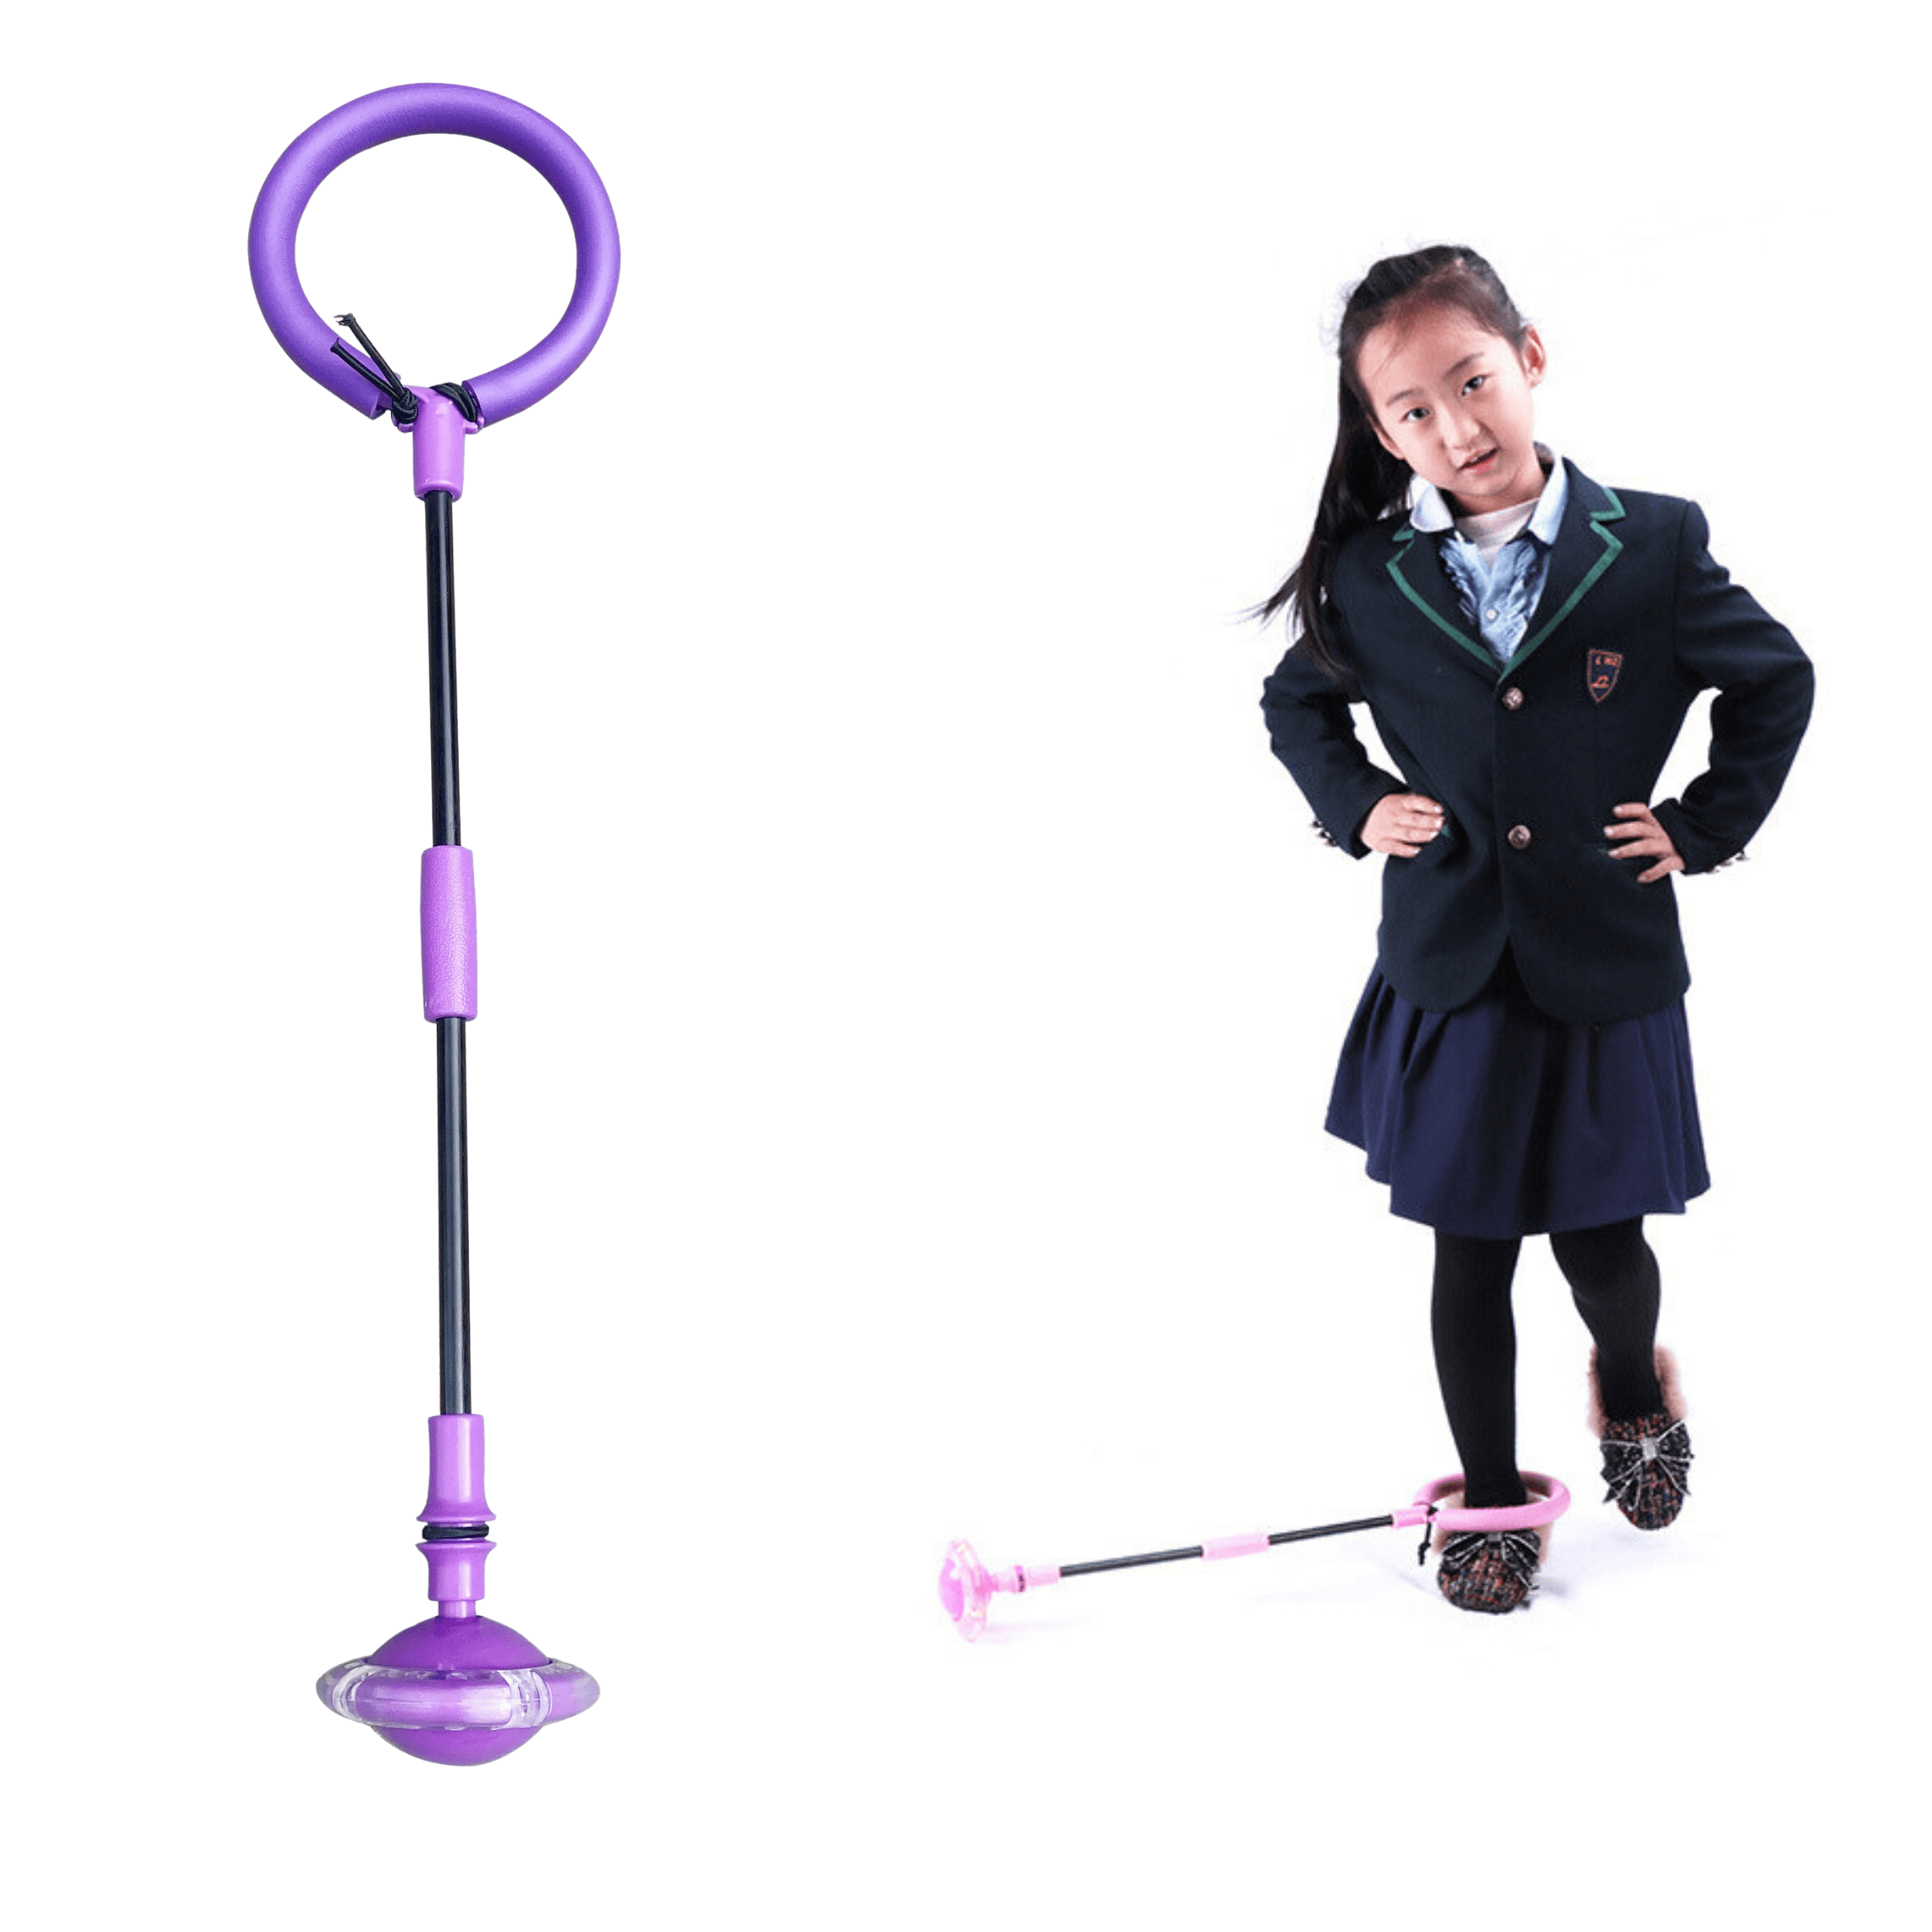 Hula hop skakanka na nogę składana dla dzieci z Diodami LED, fioletowa